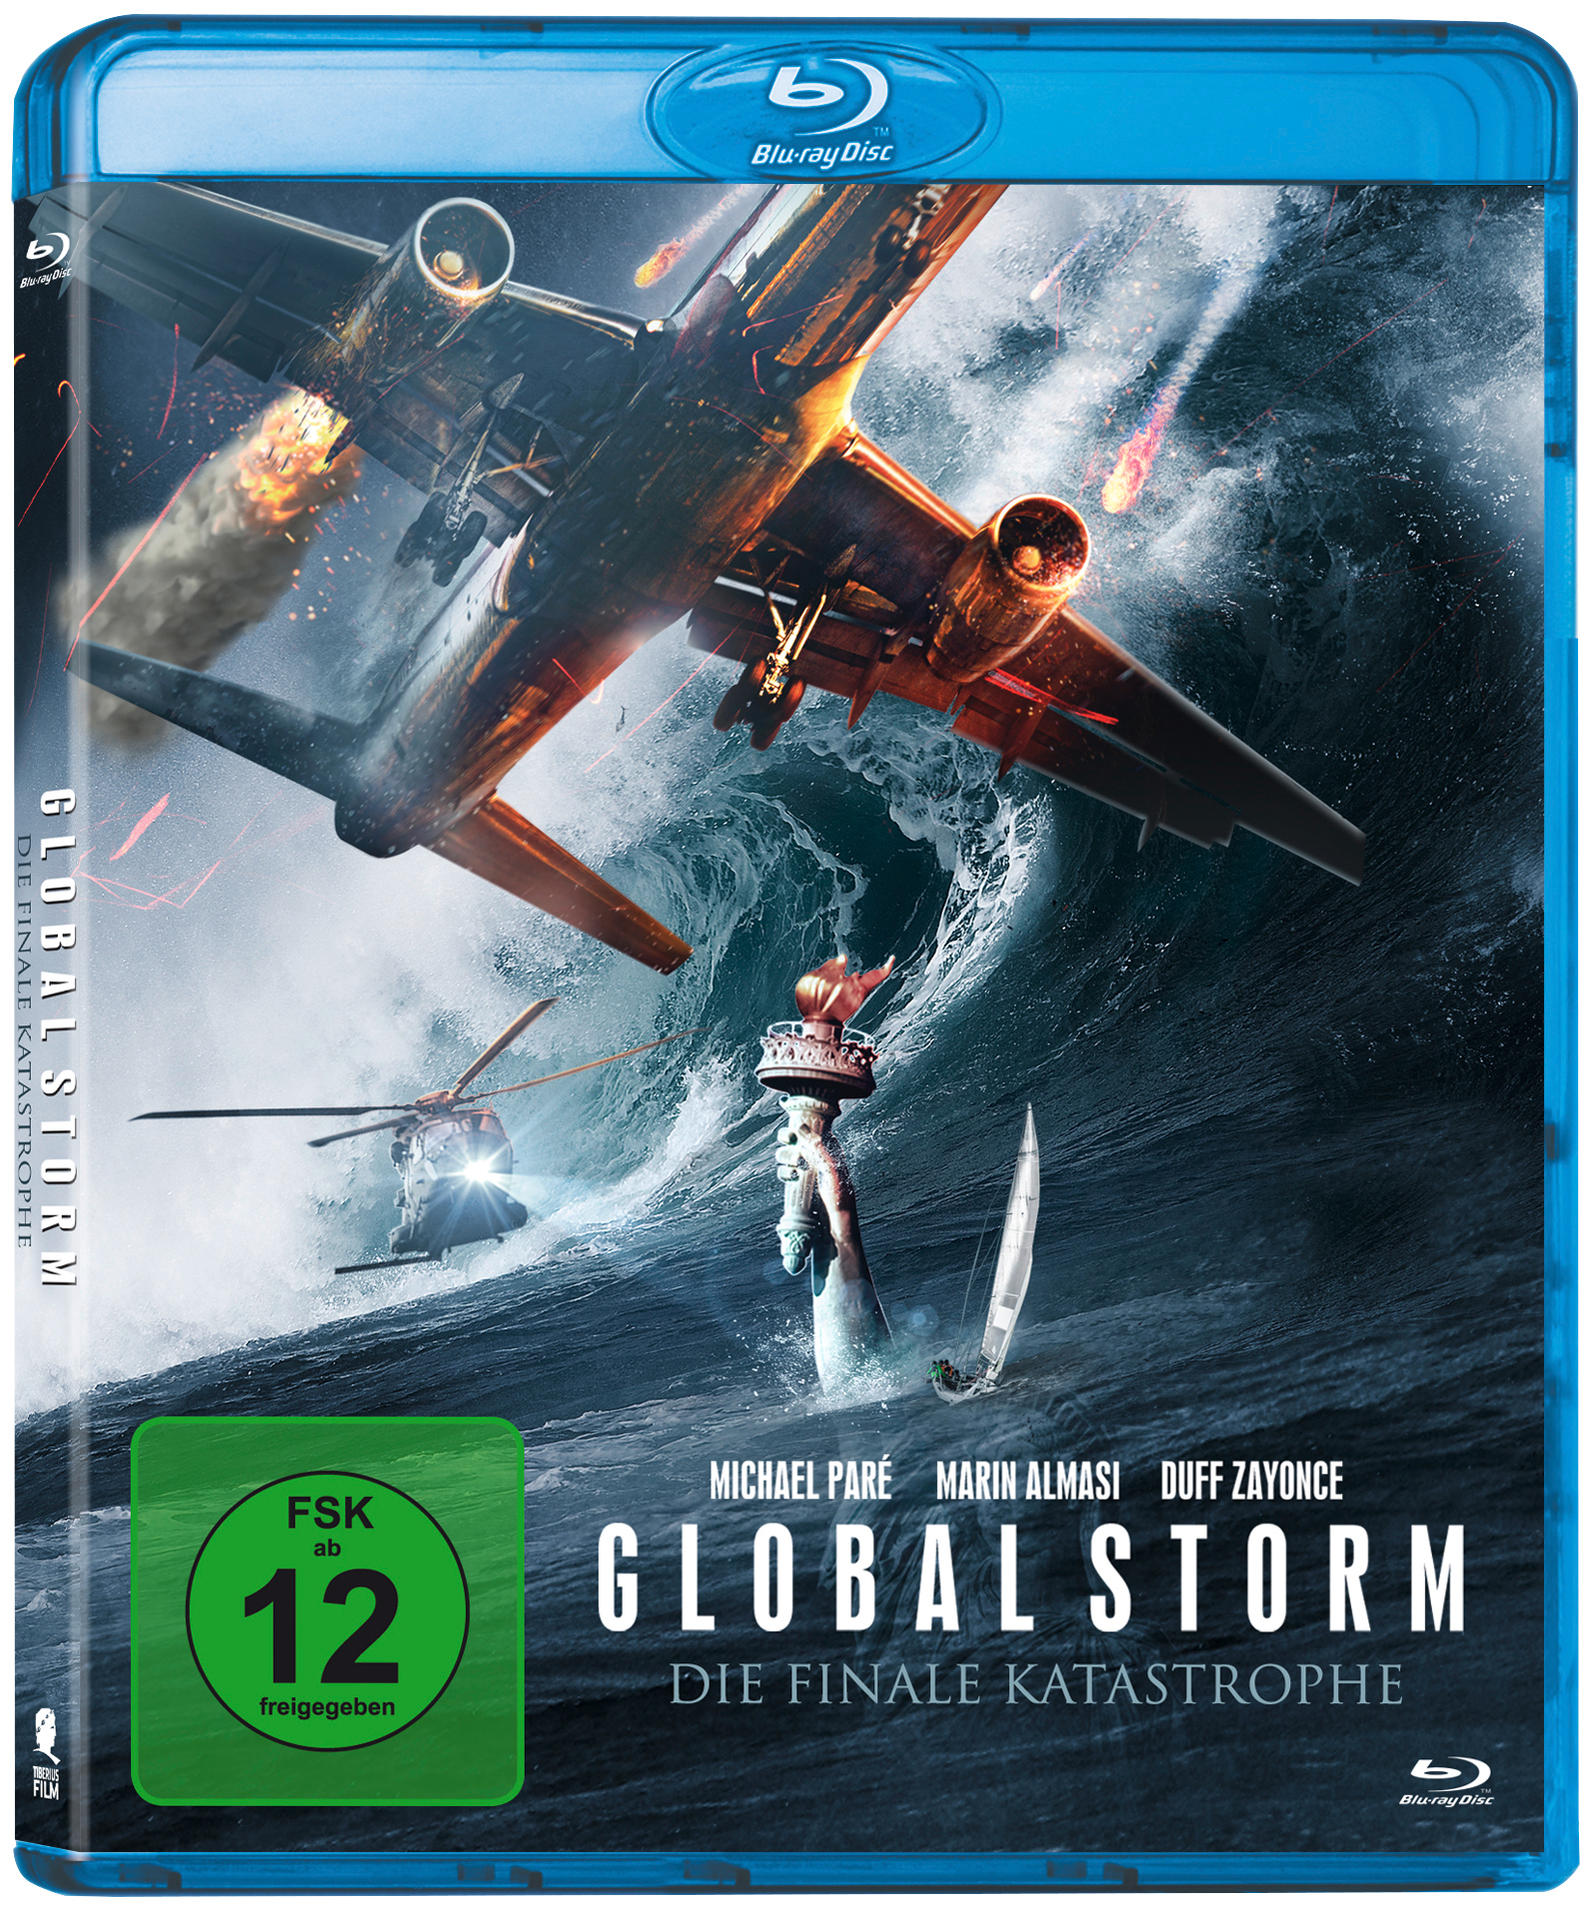 Global Storm Die finale Katastrophe - Blu-ray